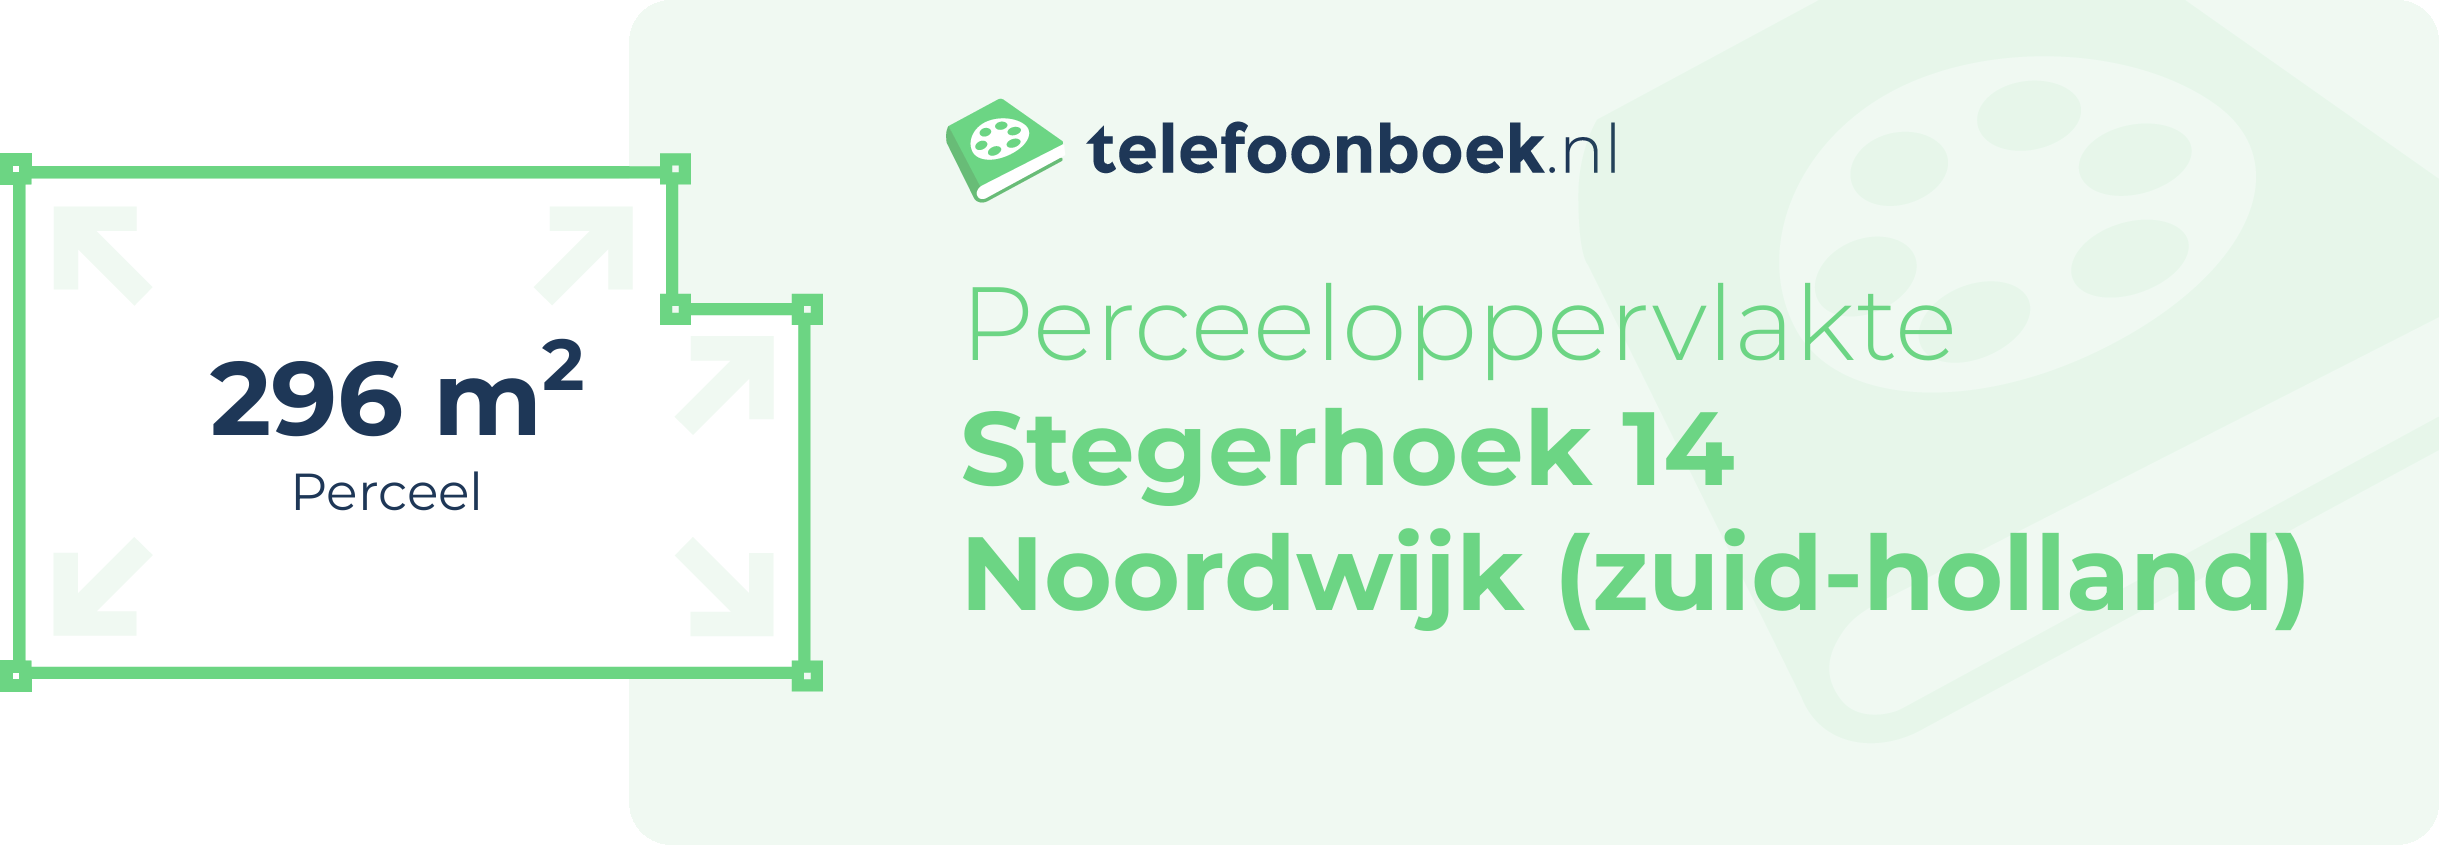 Perceeloppervlakte Stegerhoek 14 Noordwijk (Zuid-Holland)